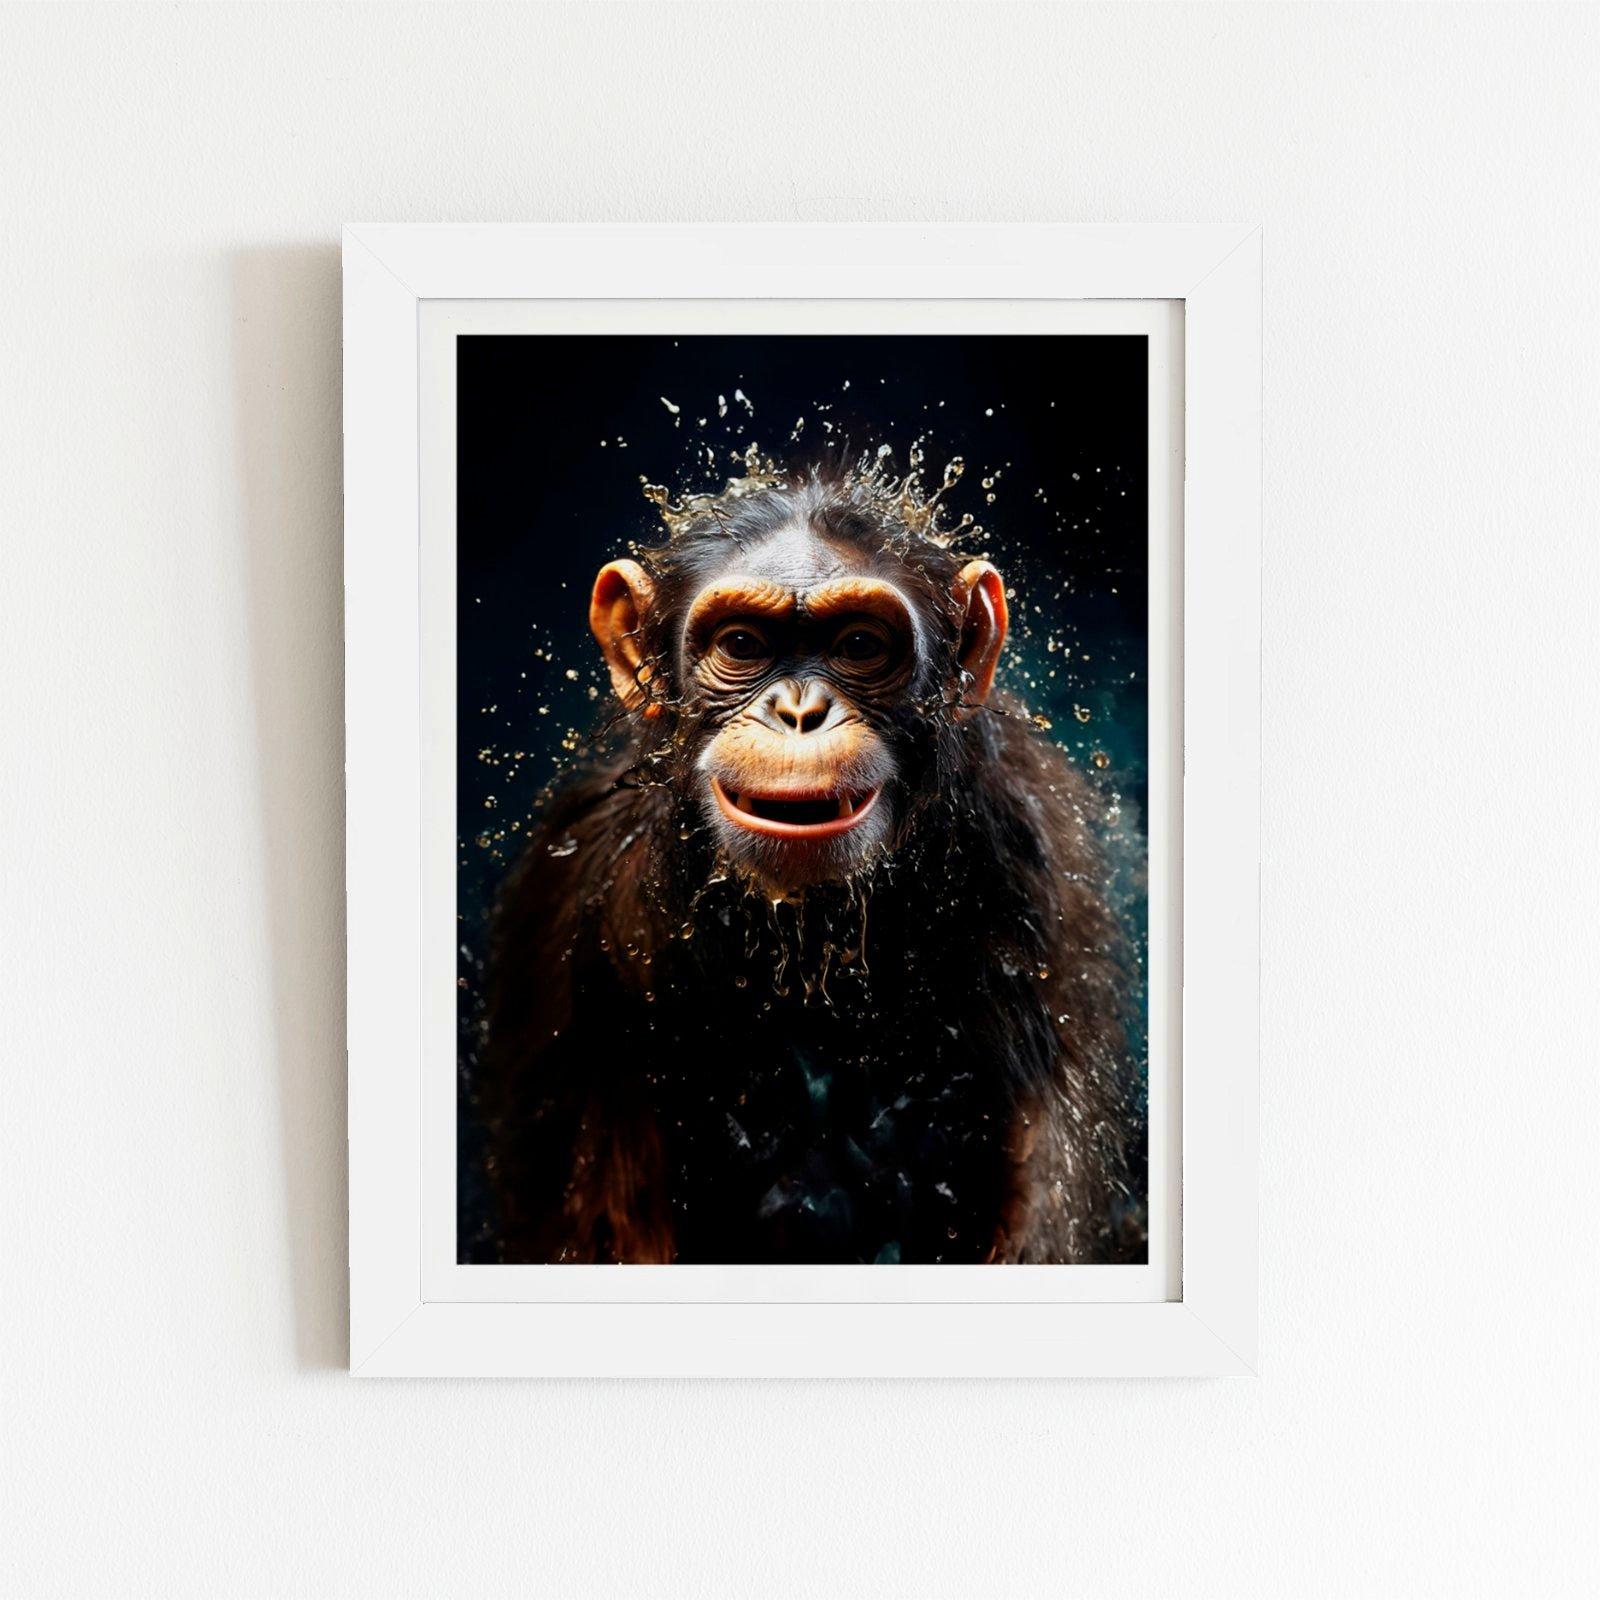 Realistic Monkey Face Splashart Framed Art Print